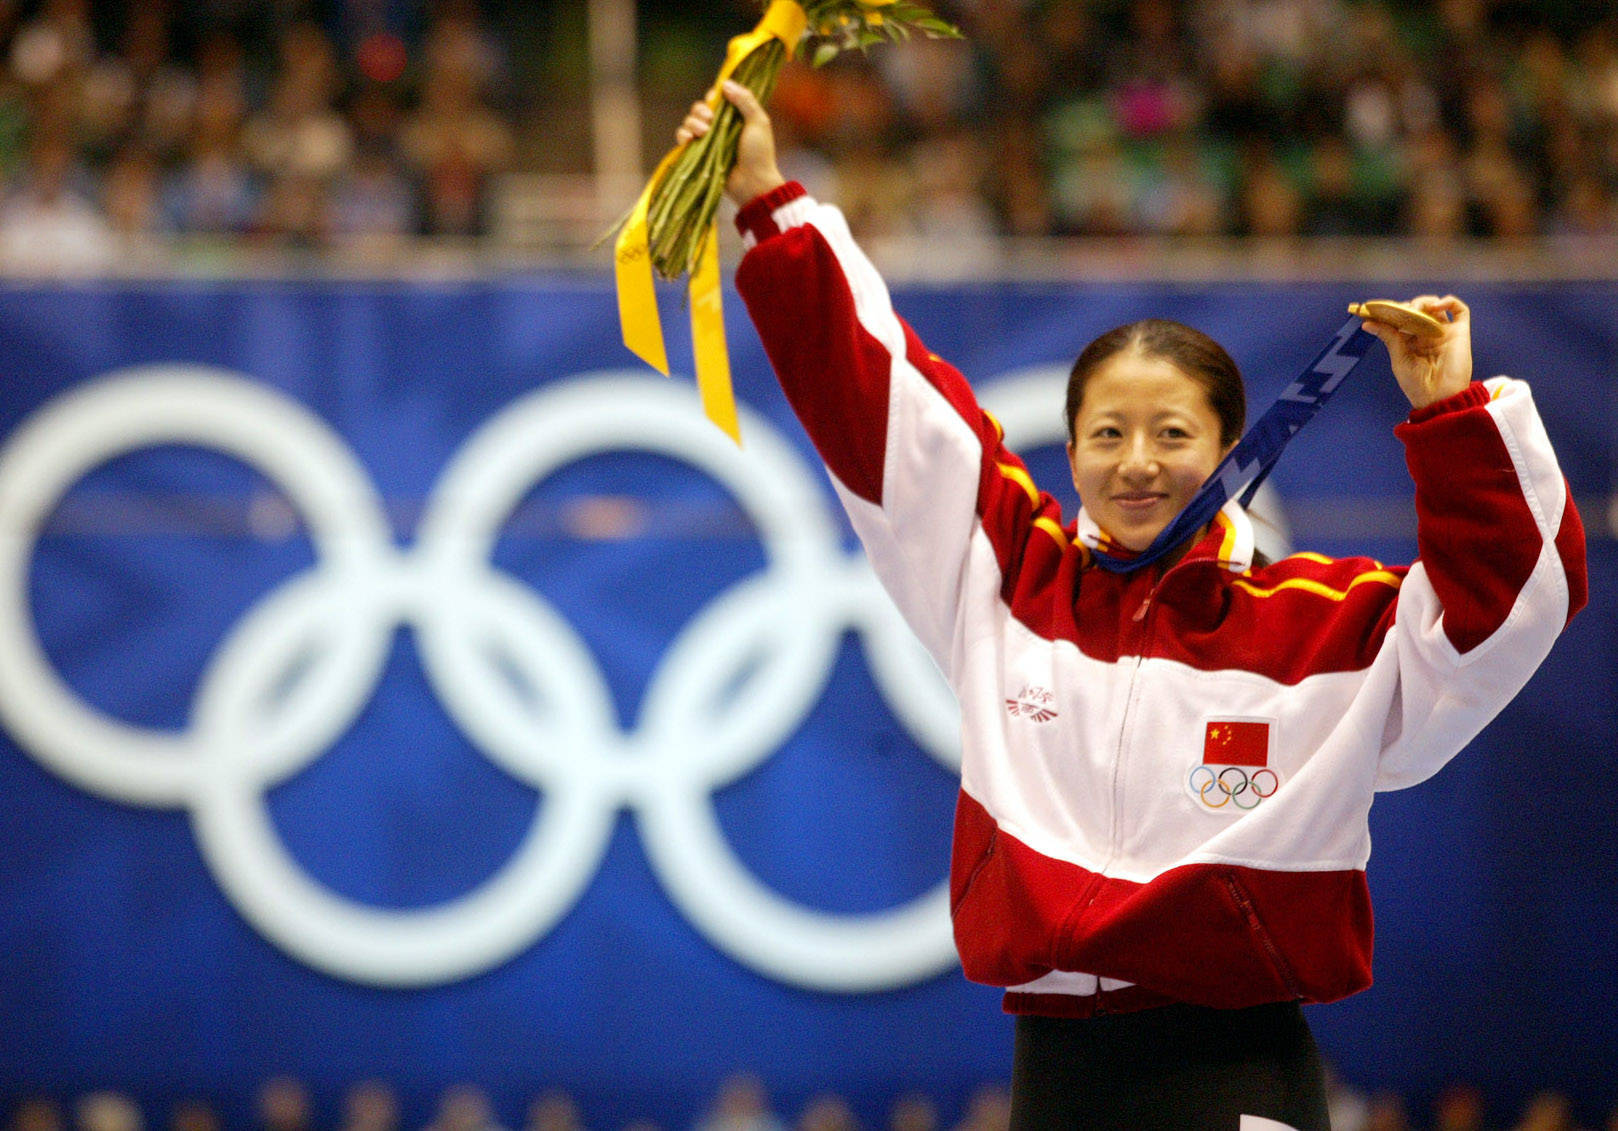 最新报道 - 中国女排时隔12年再获奥运冠军 - 华声在线